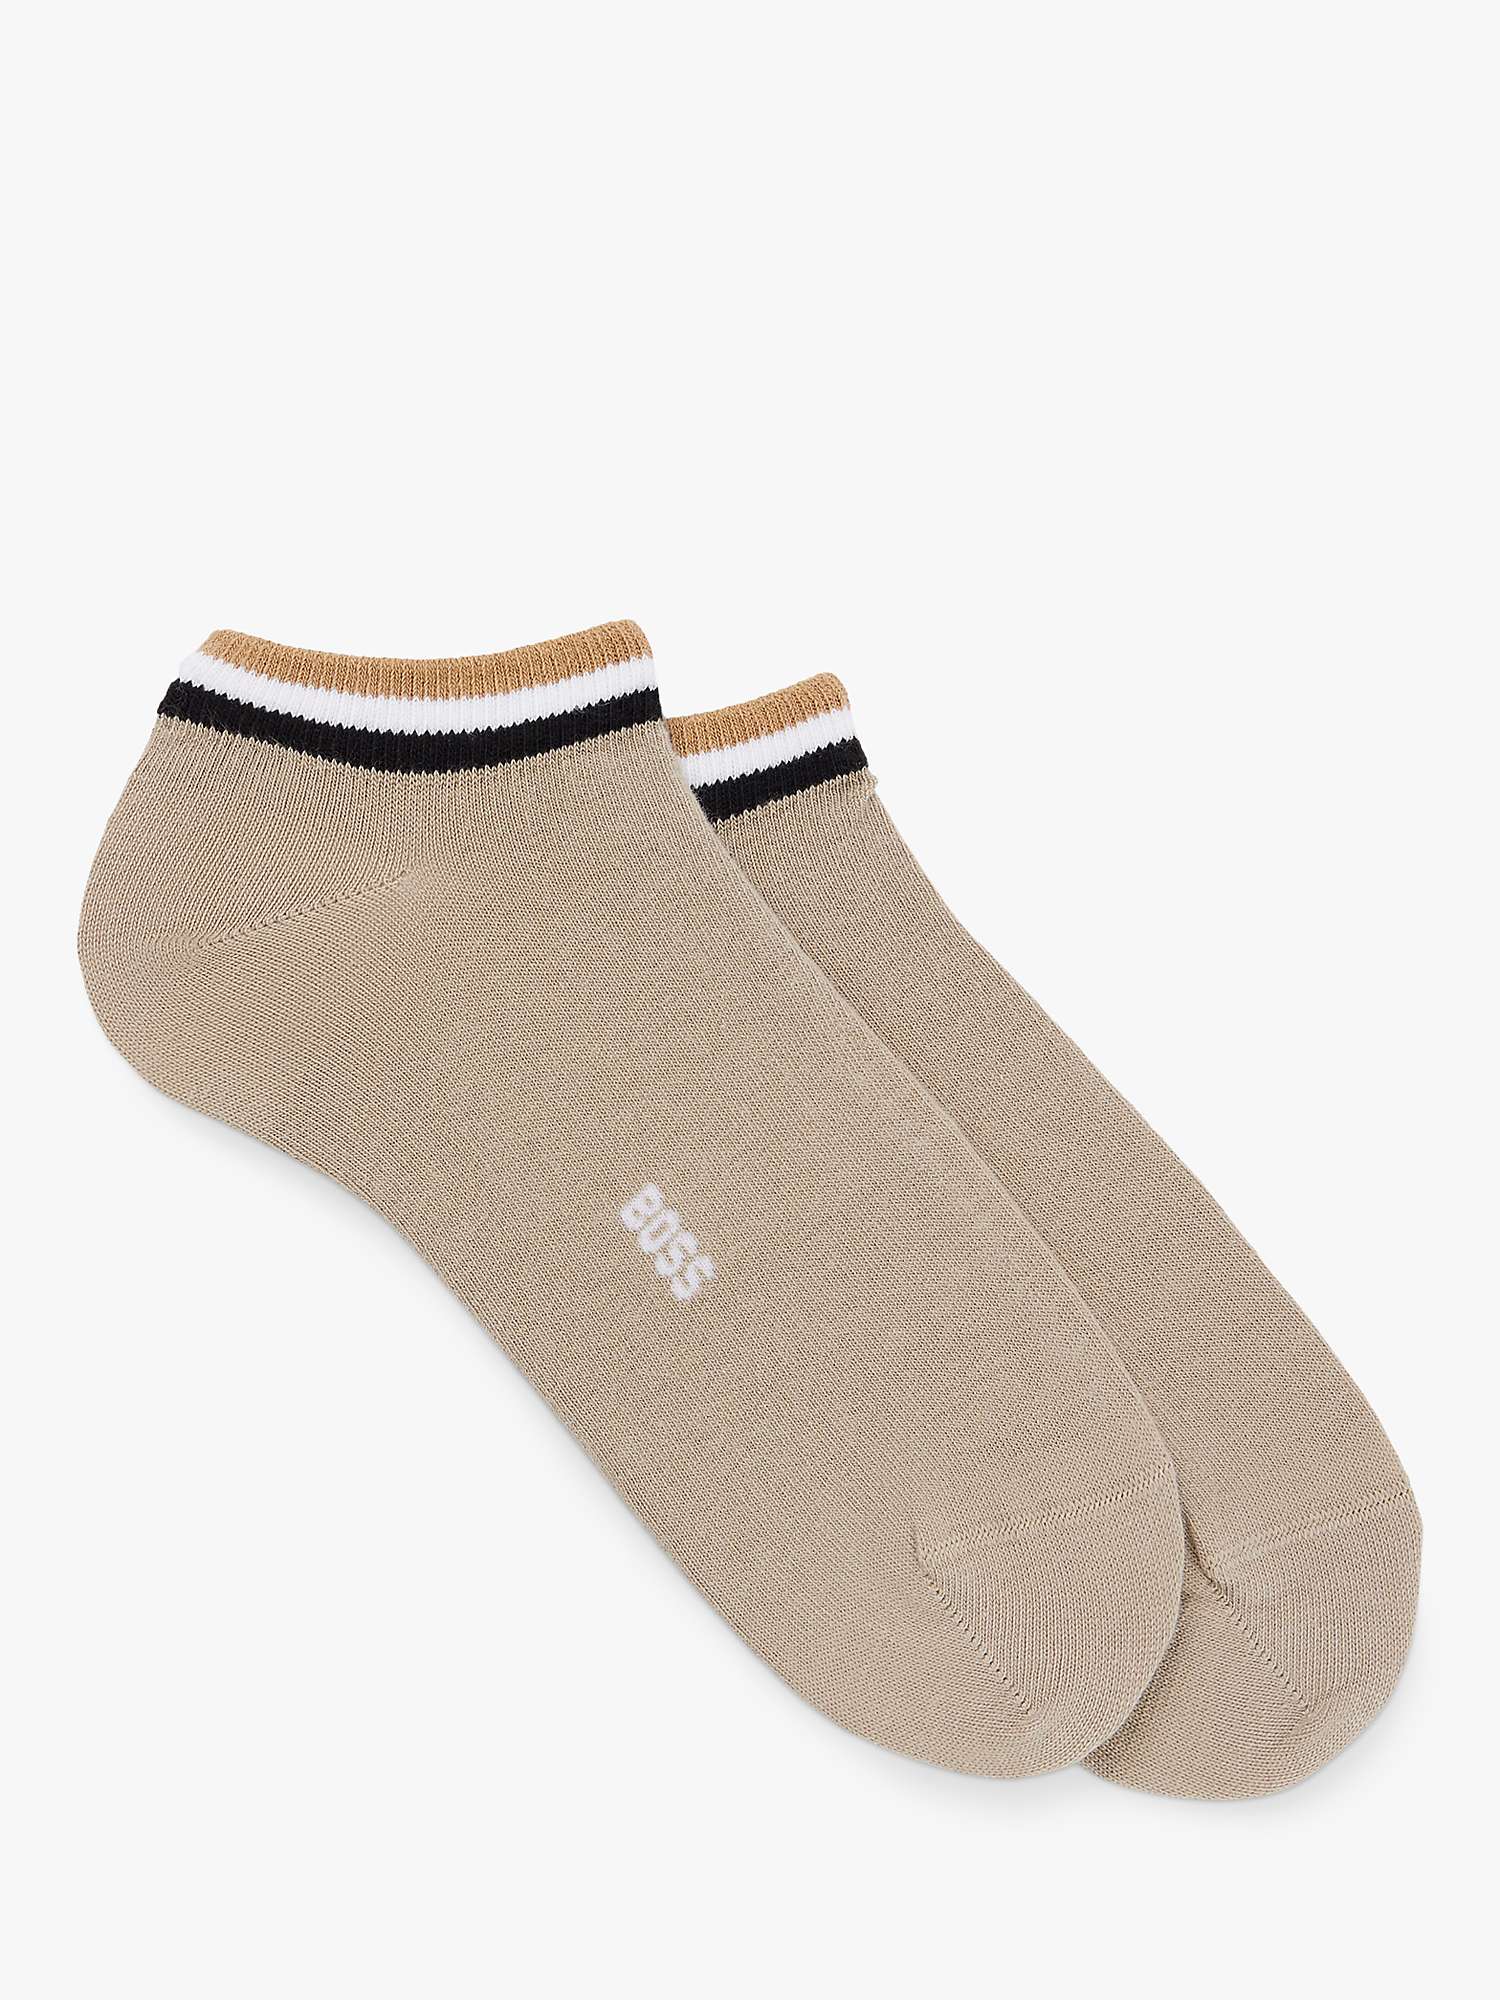 Buy HUGO BOSS BOSS Iconic Stripe Design Ankle Socks, Pack of 2 Online at johnlewis.com